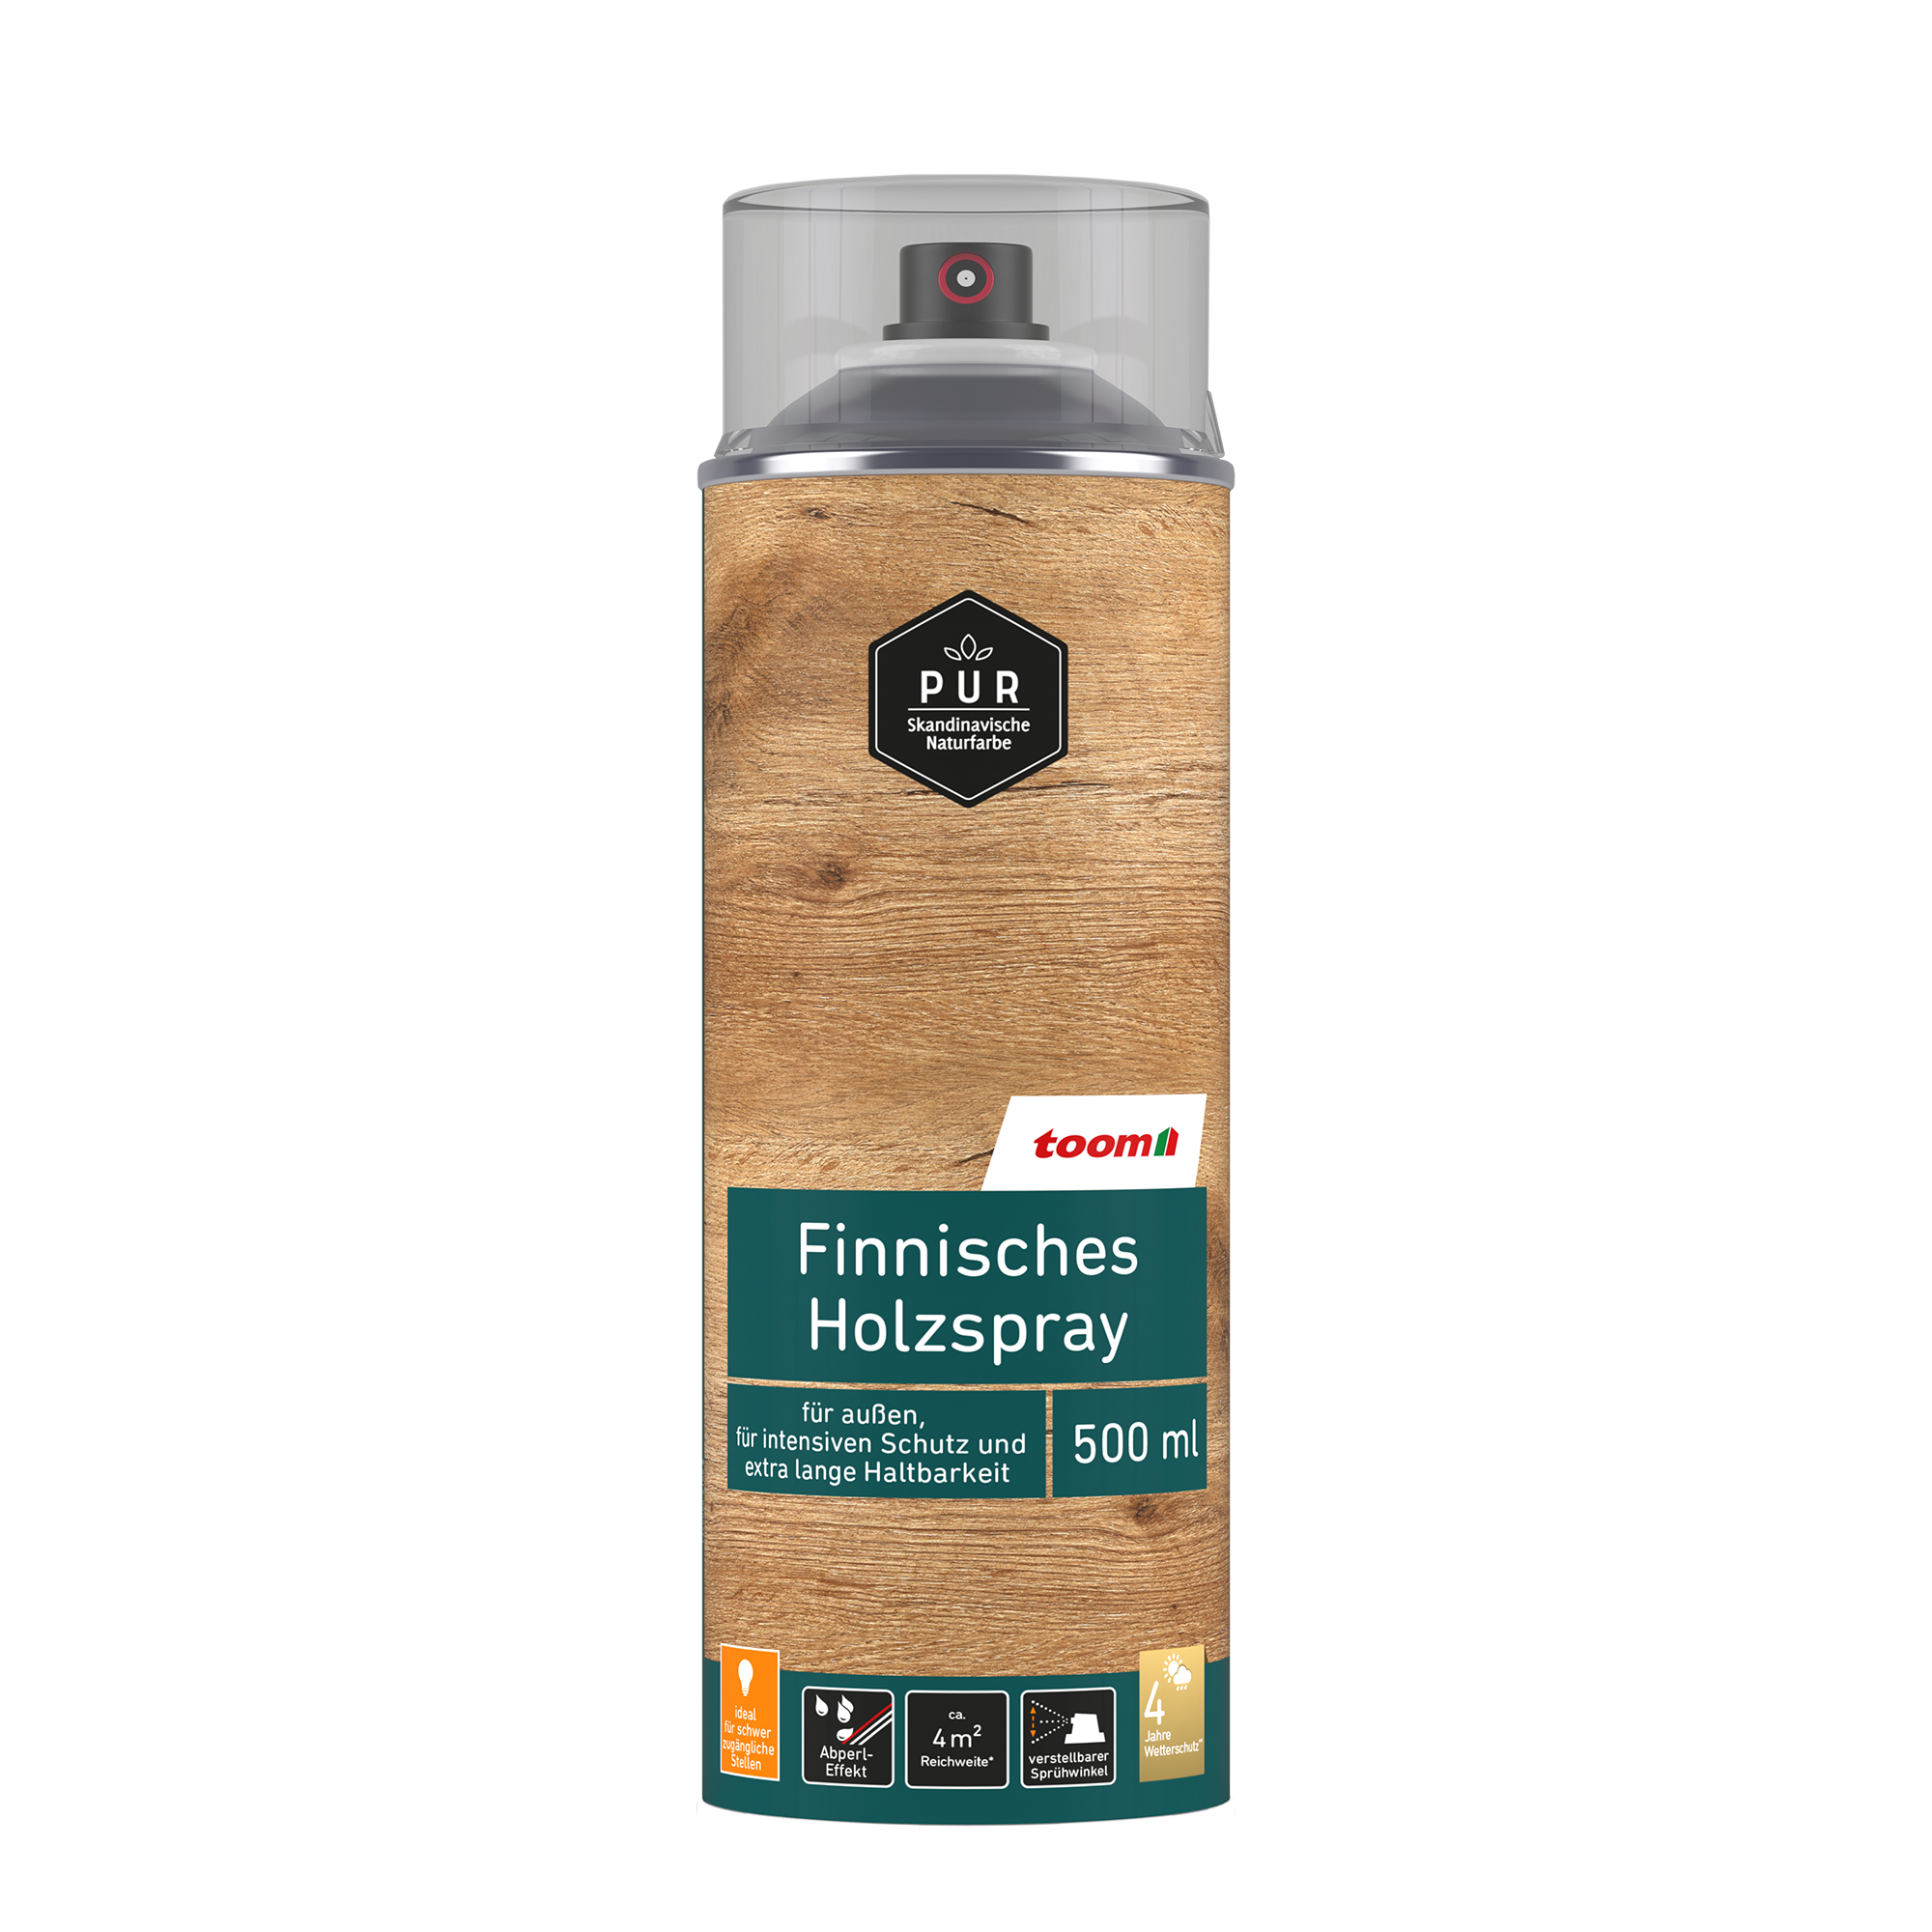 Finnisches Holzspray palisanderfarben 500 ml + product picture